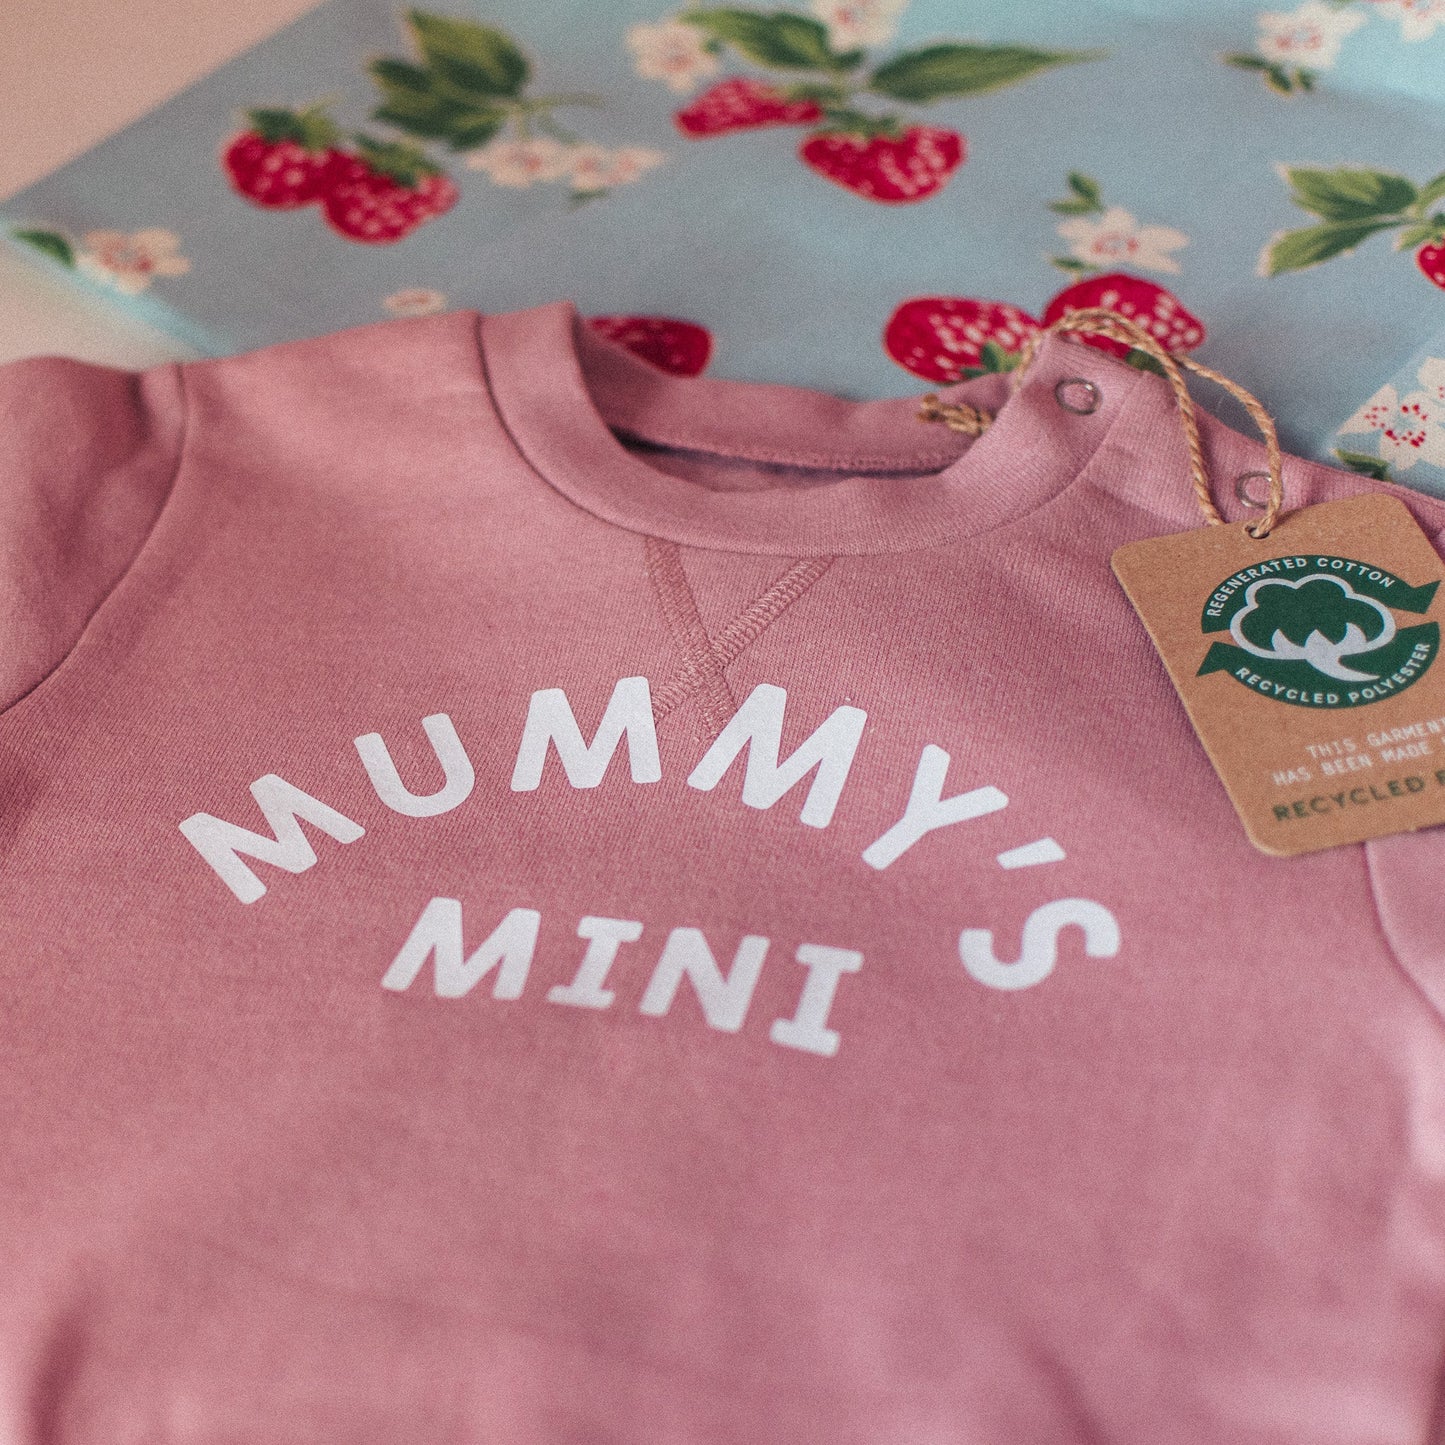 Mummy's Mini Kids Sweatshirt - F&B Crafts - Fox & Co Apparel